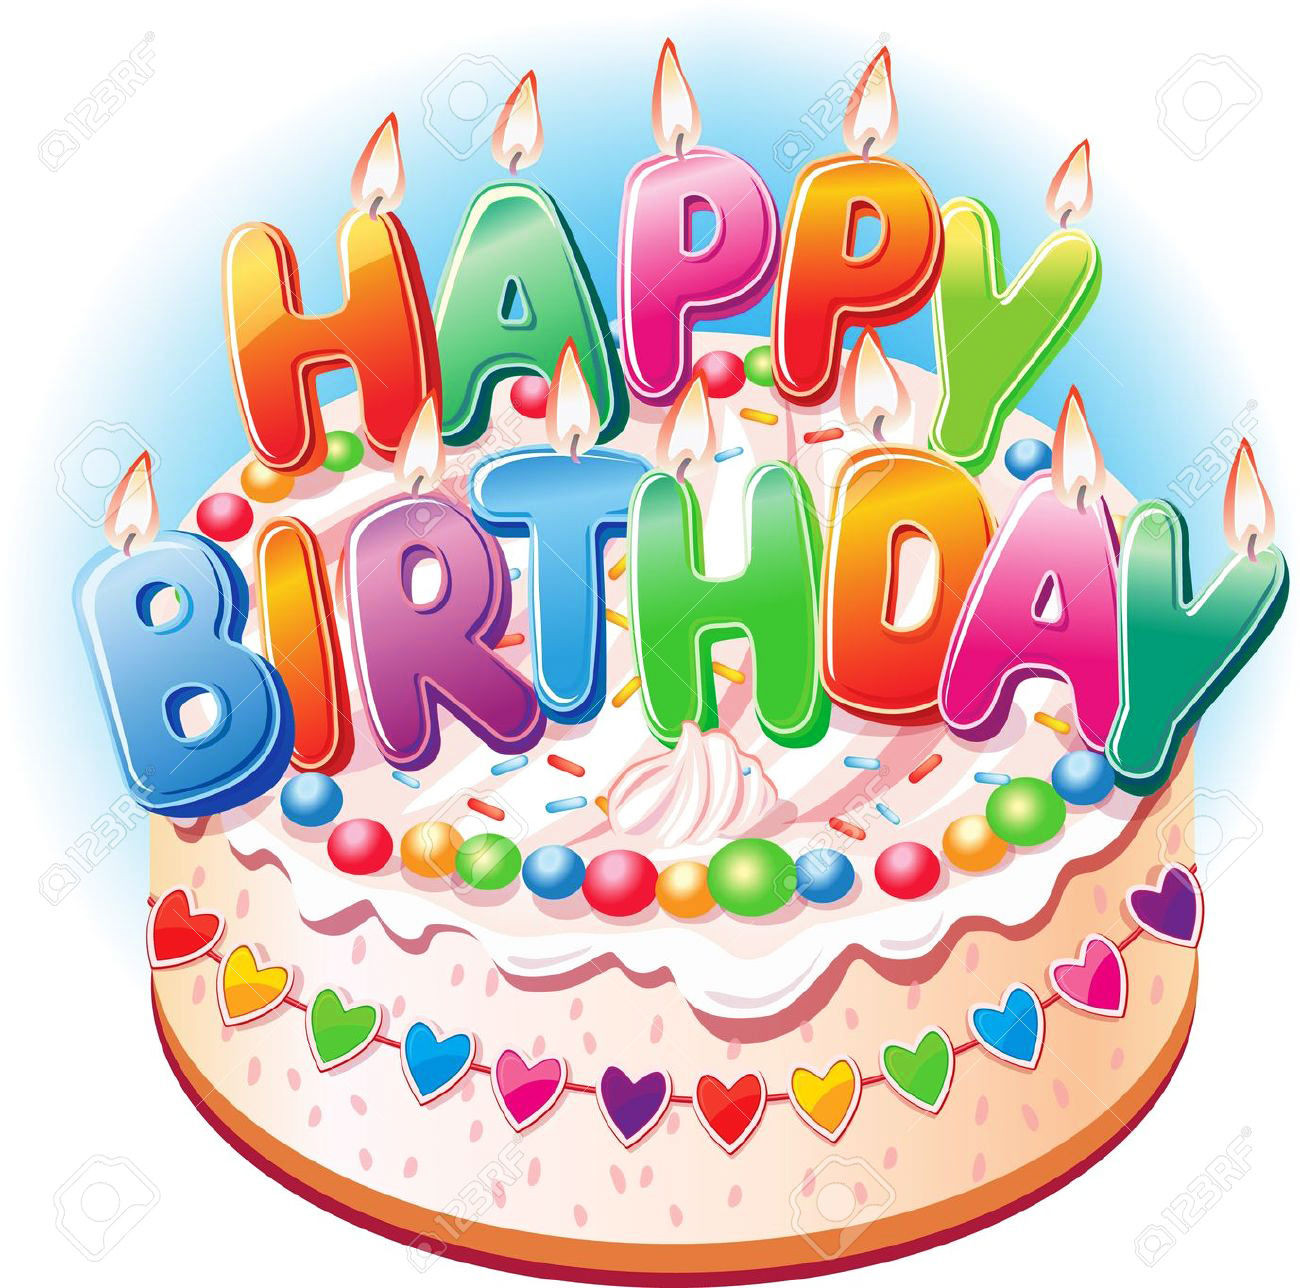 Happy Birthday Cake Pictures
 Top 100 Happy Birthday Cake